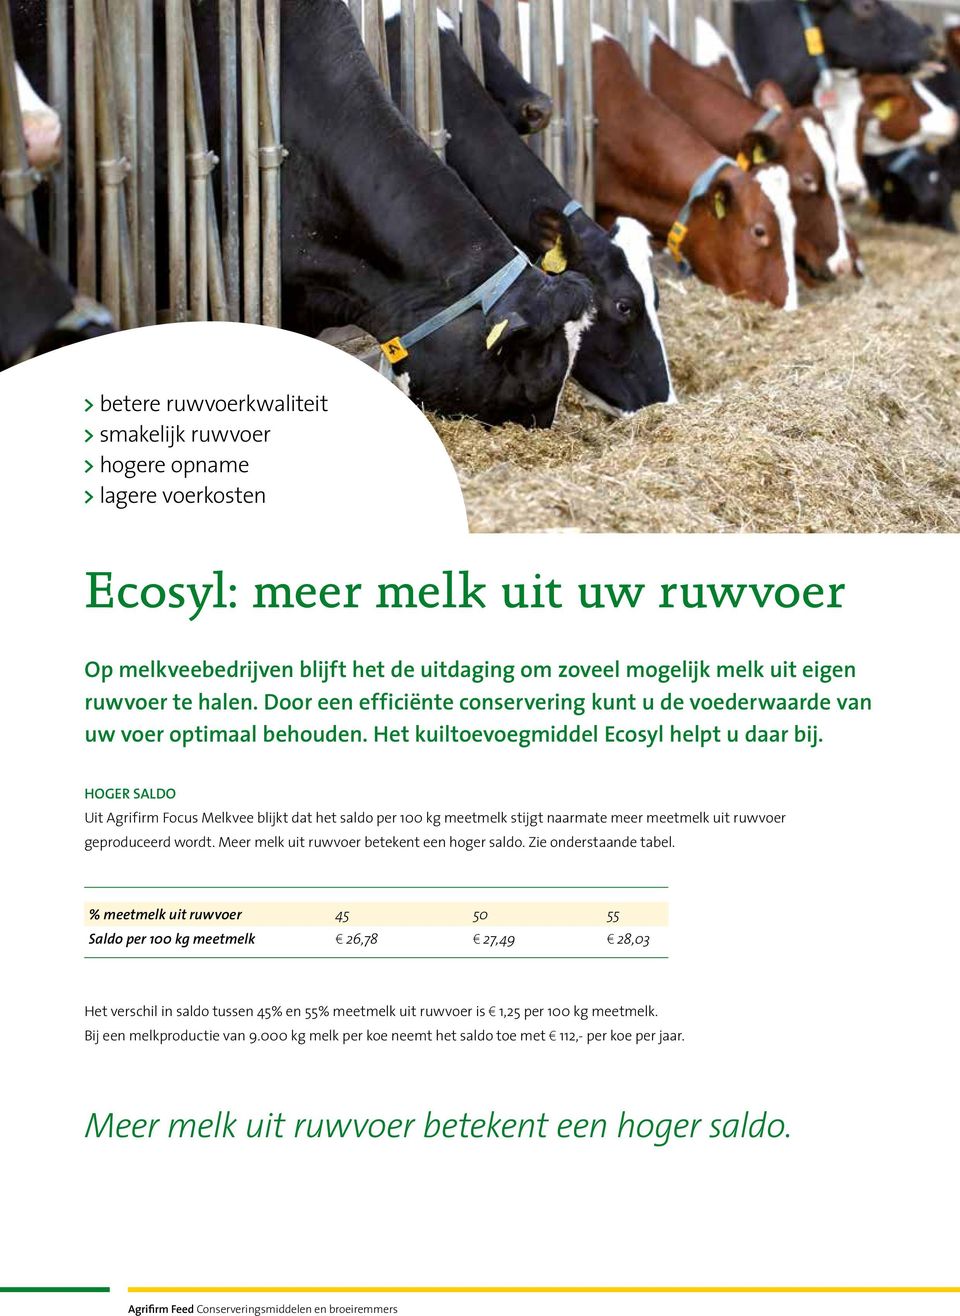 Hoger saldo Uit Agrifirm Focus Melkvee blijkt dat het saldo per 100 kg meetmelk stijgt naarmate meer meetmelk uit ruwvoer geproduceerd wordt. Meer melk uit ruwvoer betekent een hoger saldo.